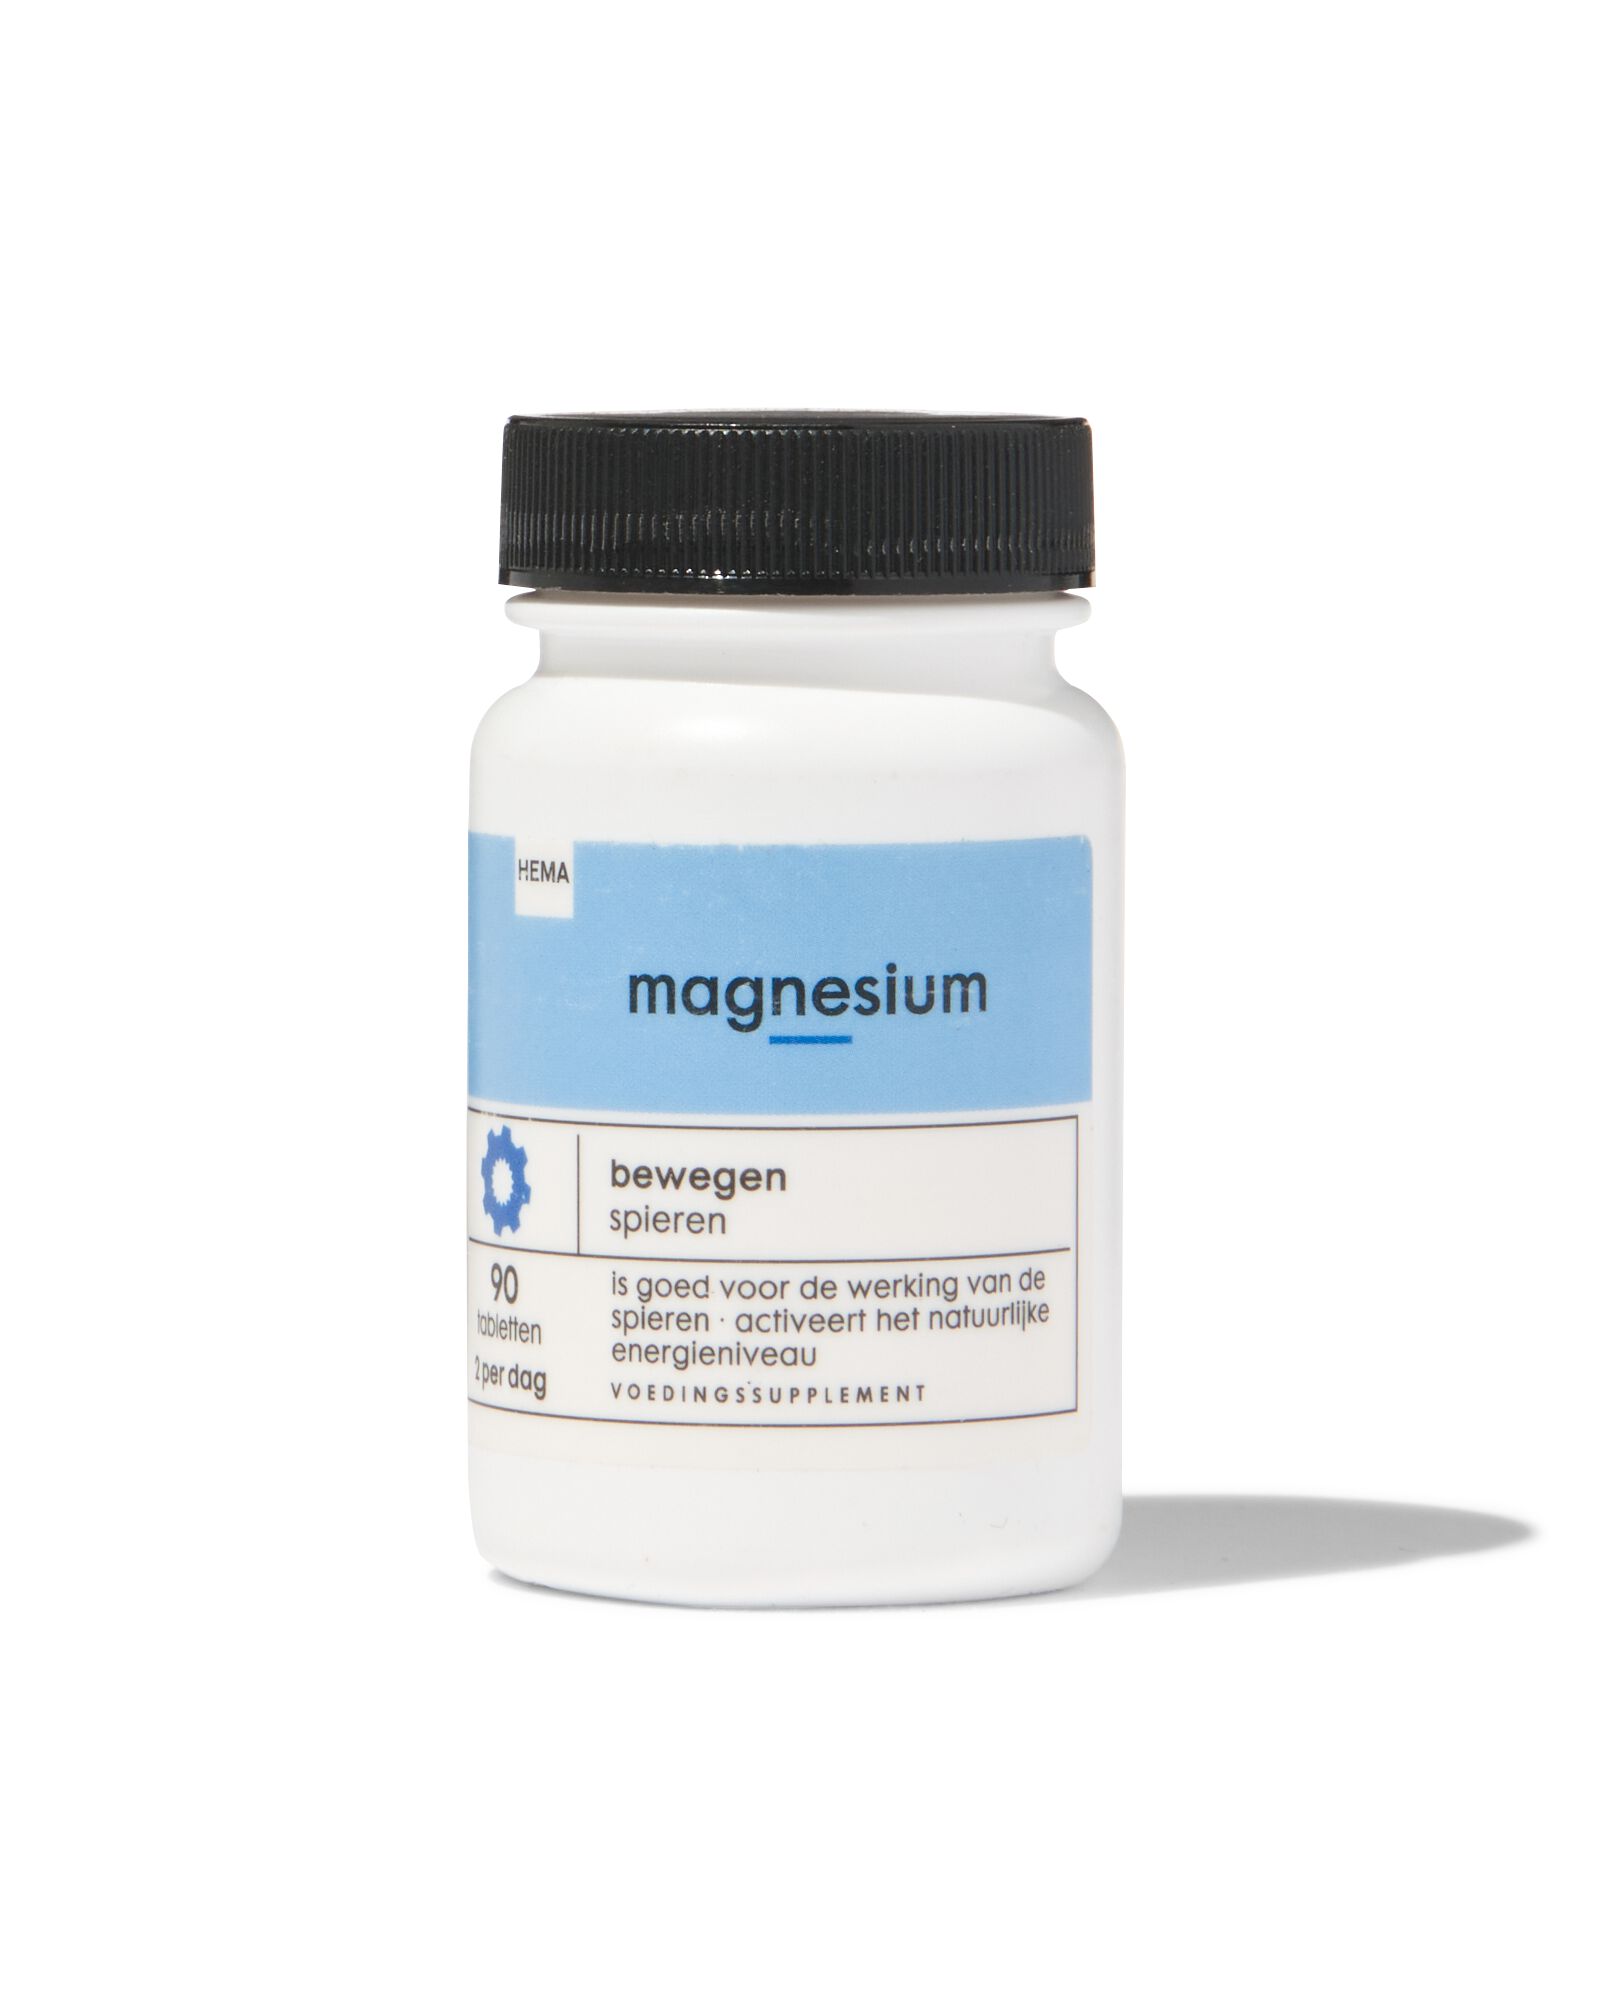 magnesium - 90 stuks - 11402107 - HEMA